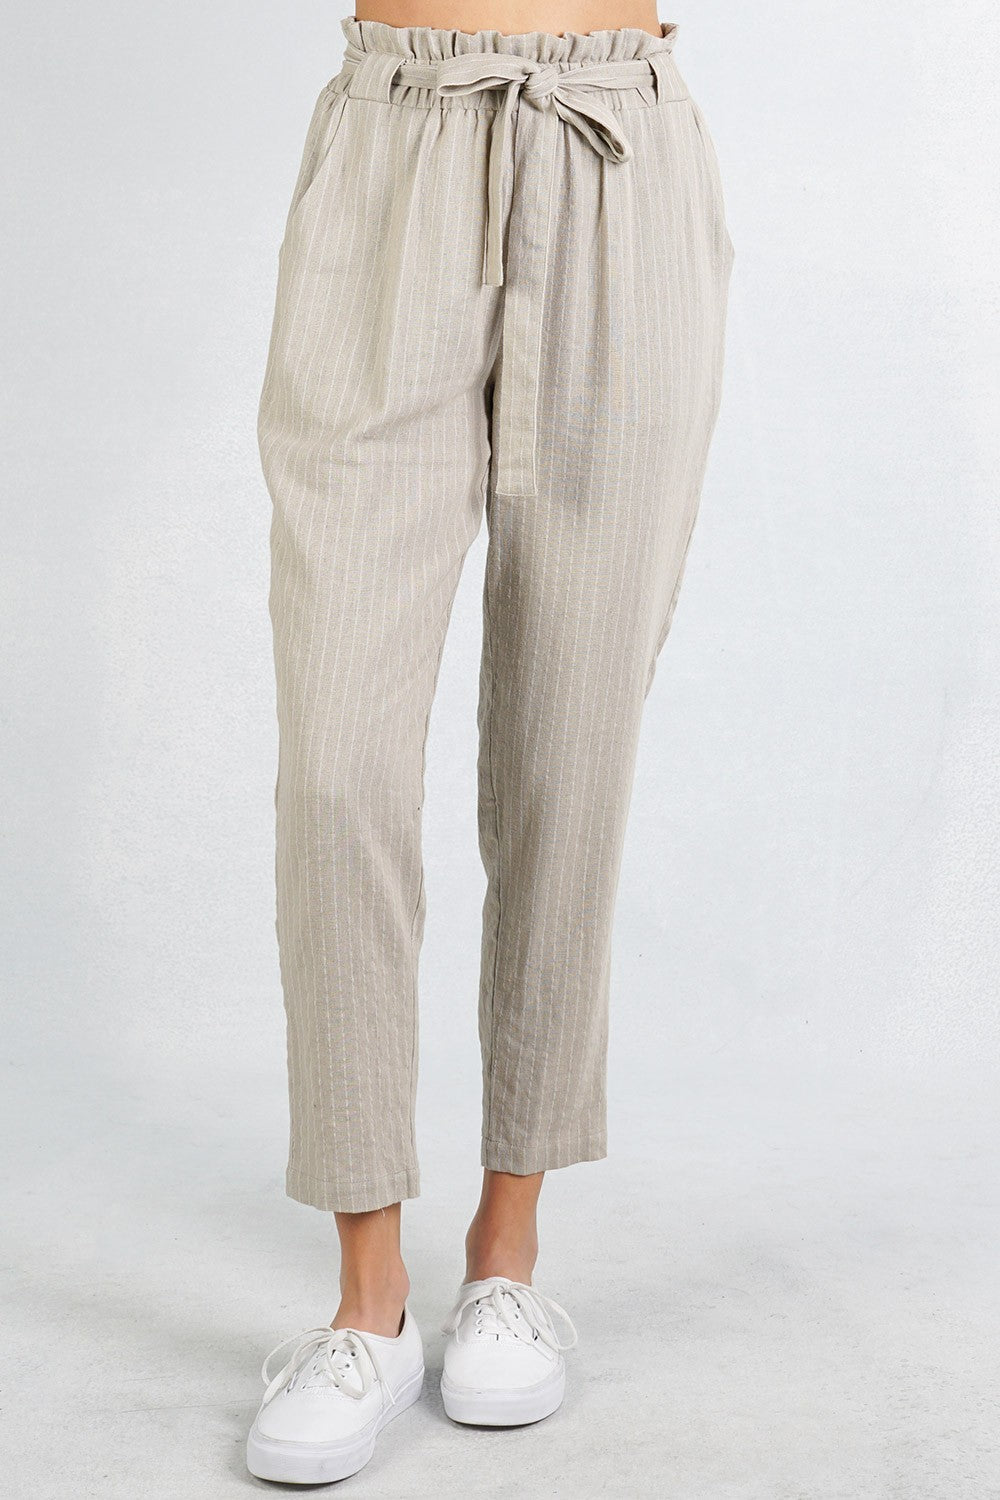 Stripe Paper Bag Pants - Khaki